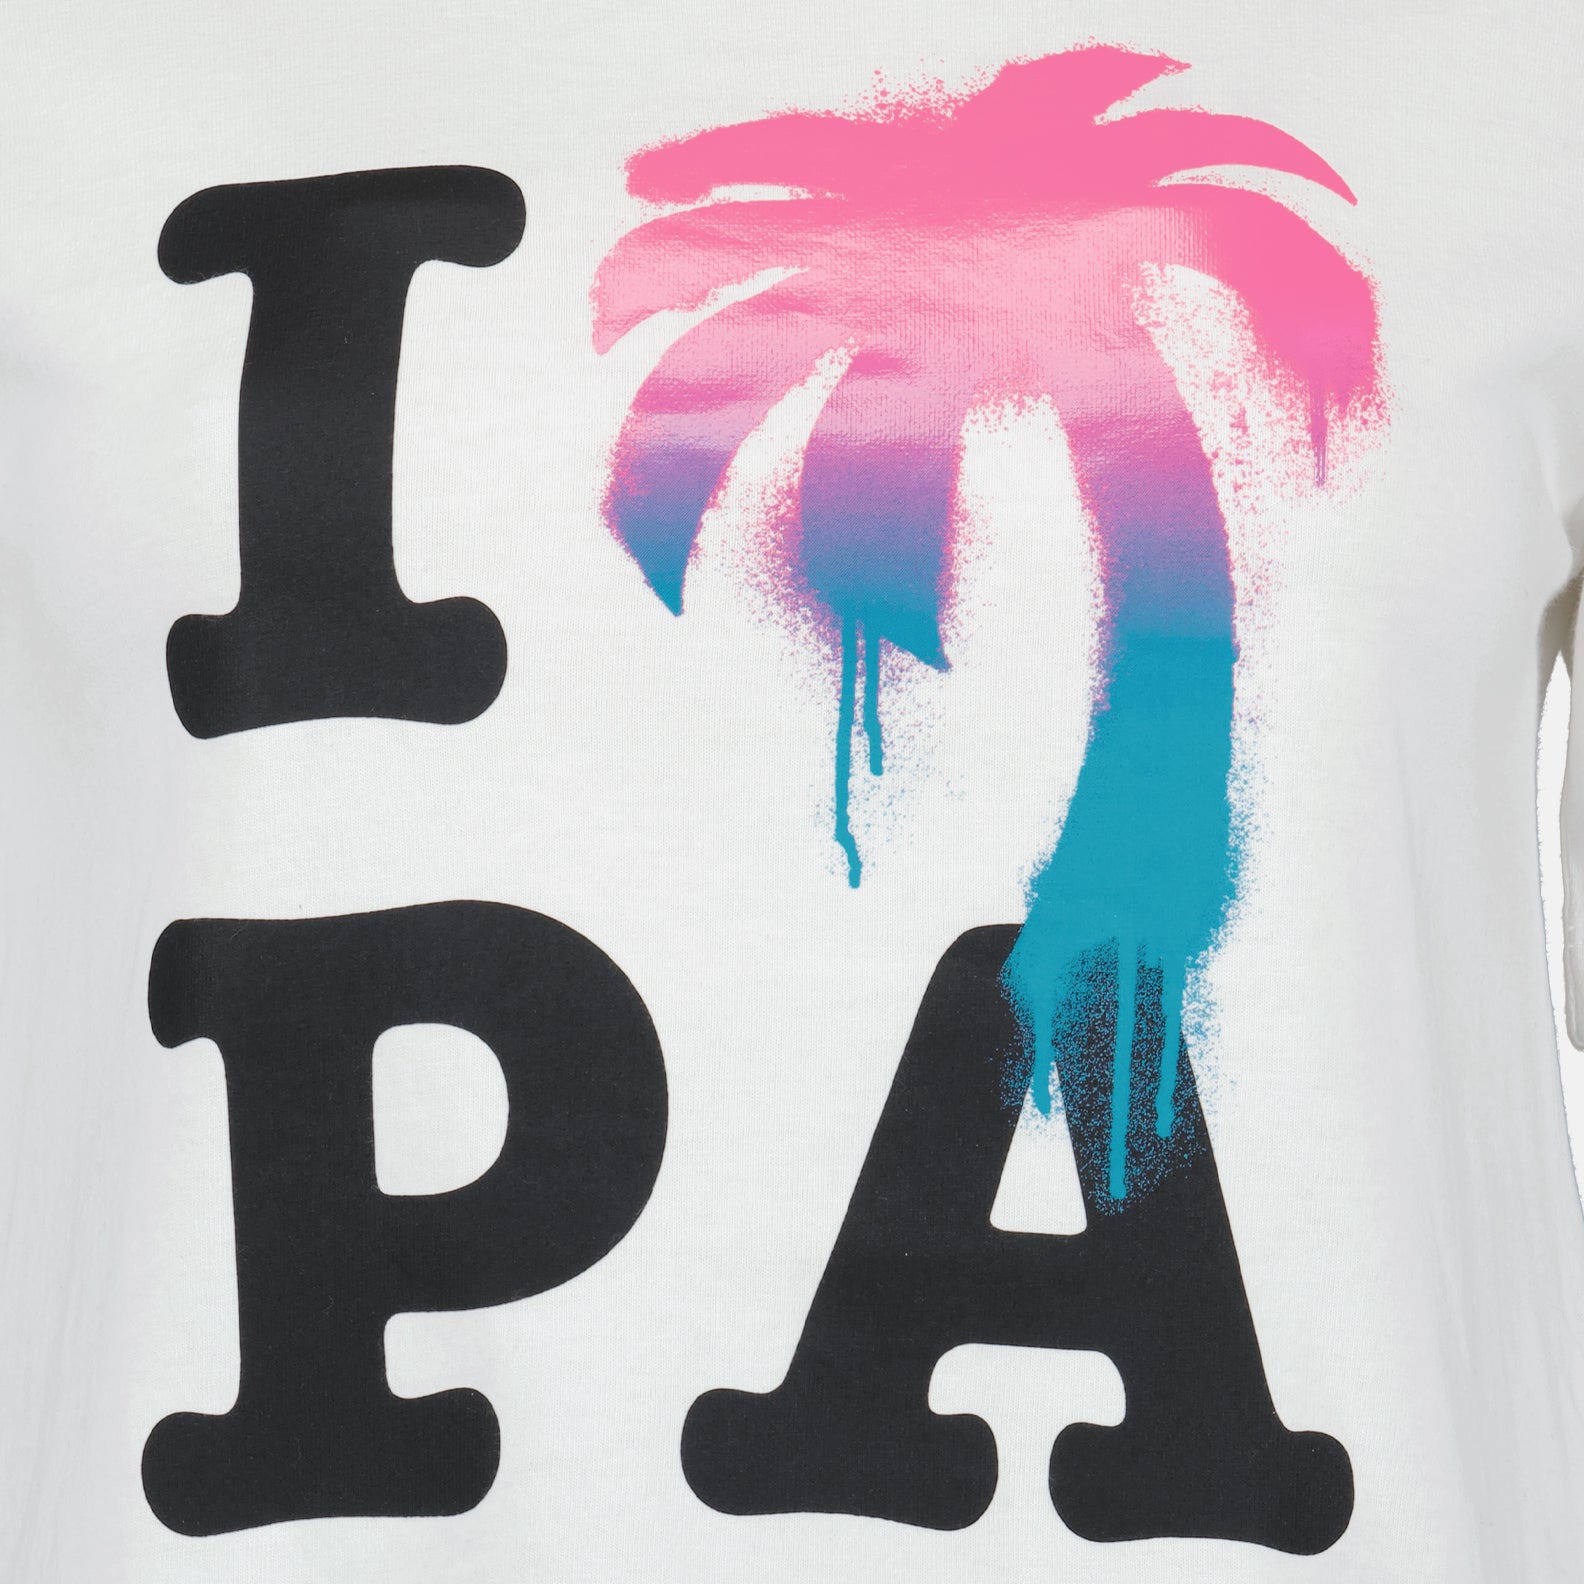 PAのTシャツが大好きです